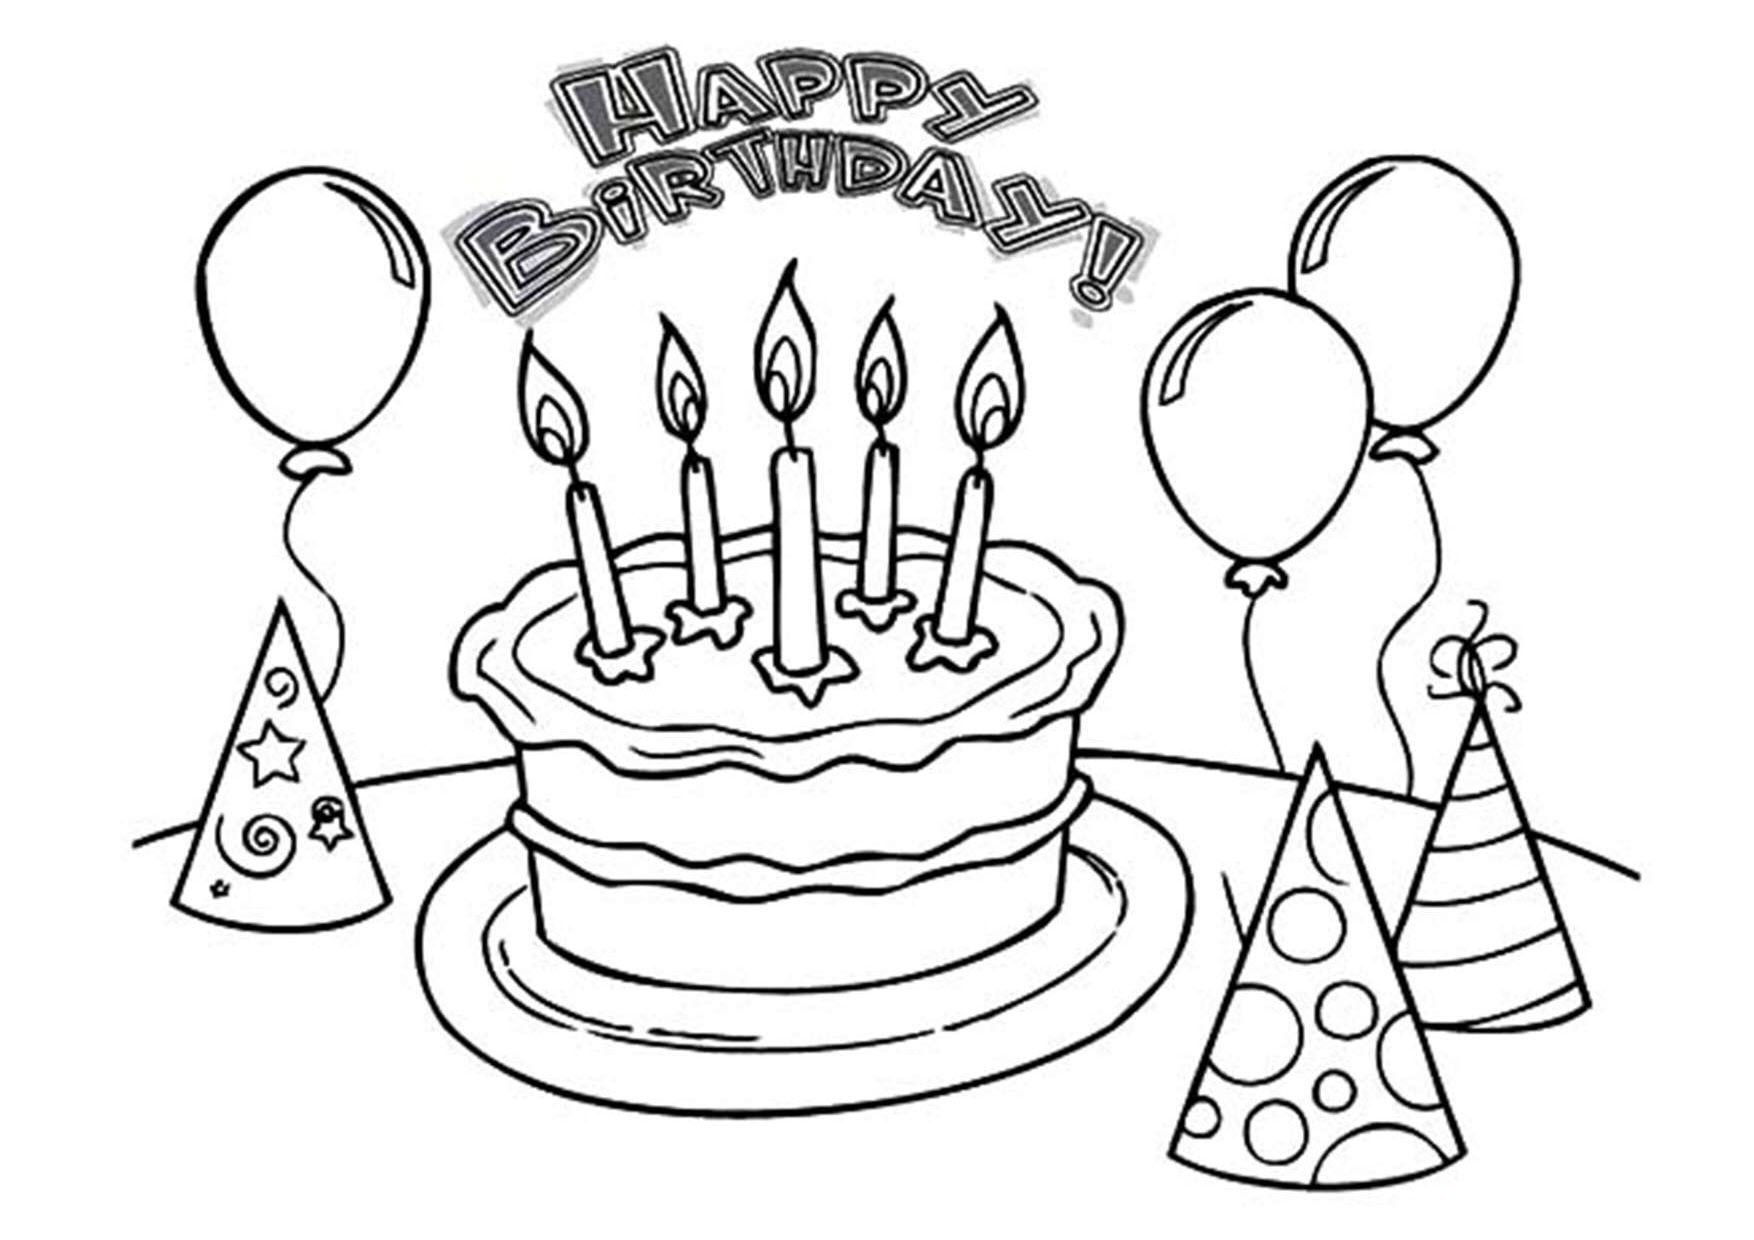 Vẽ bánh sinh nhật đơn giản và tô màu cho bé  Dạy bé tô màu  Kue ulang  tahun Halaman Mewarnai  YouTube  Sinh nhật Bánh sinh nhật Hình vẽ